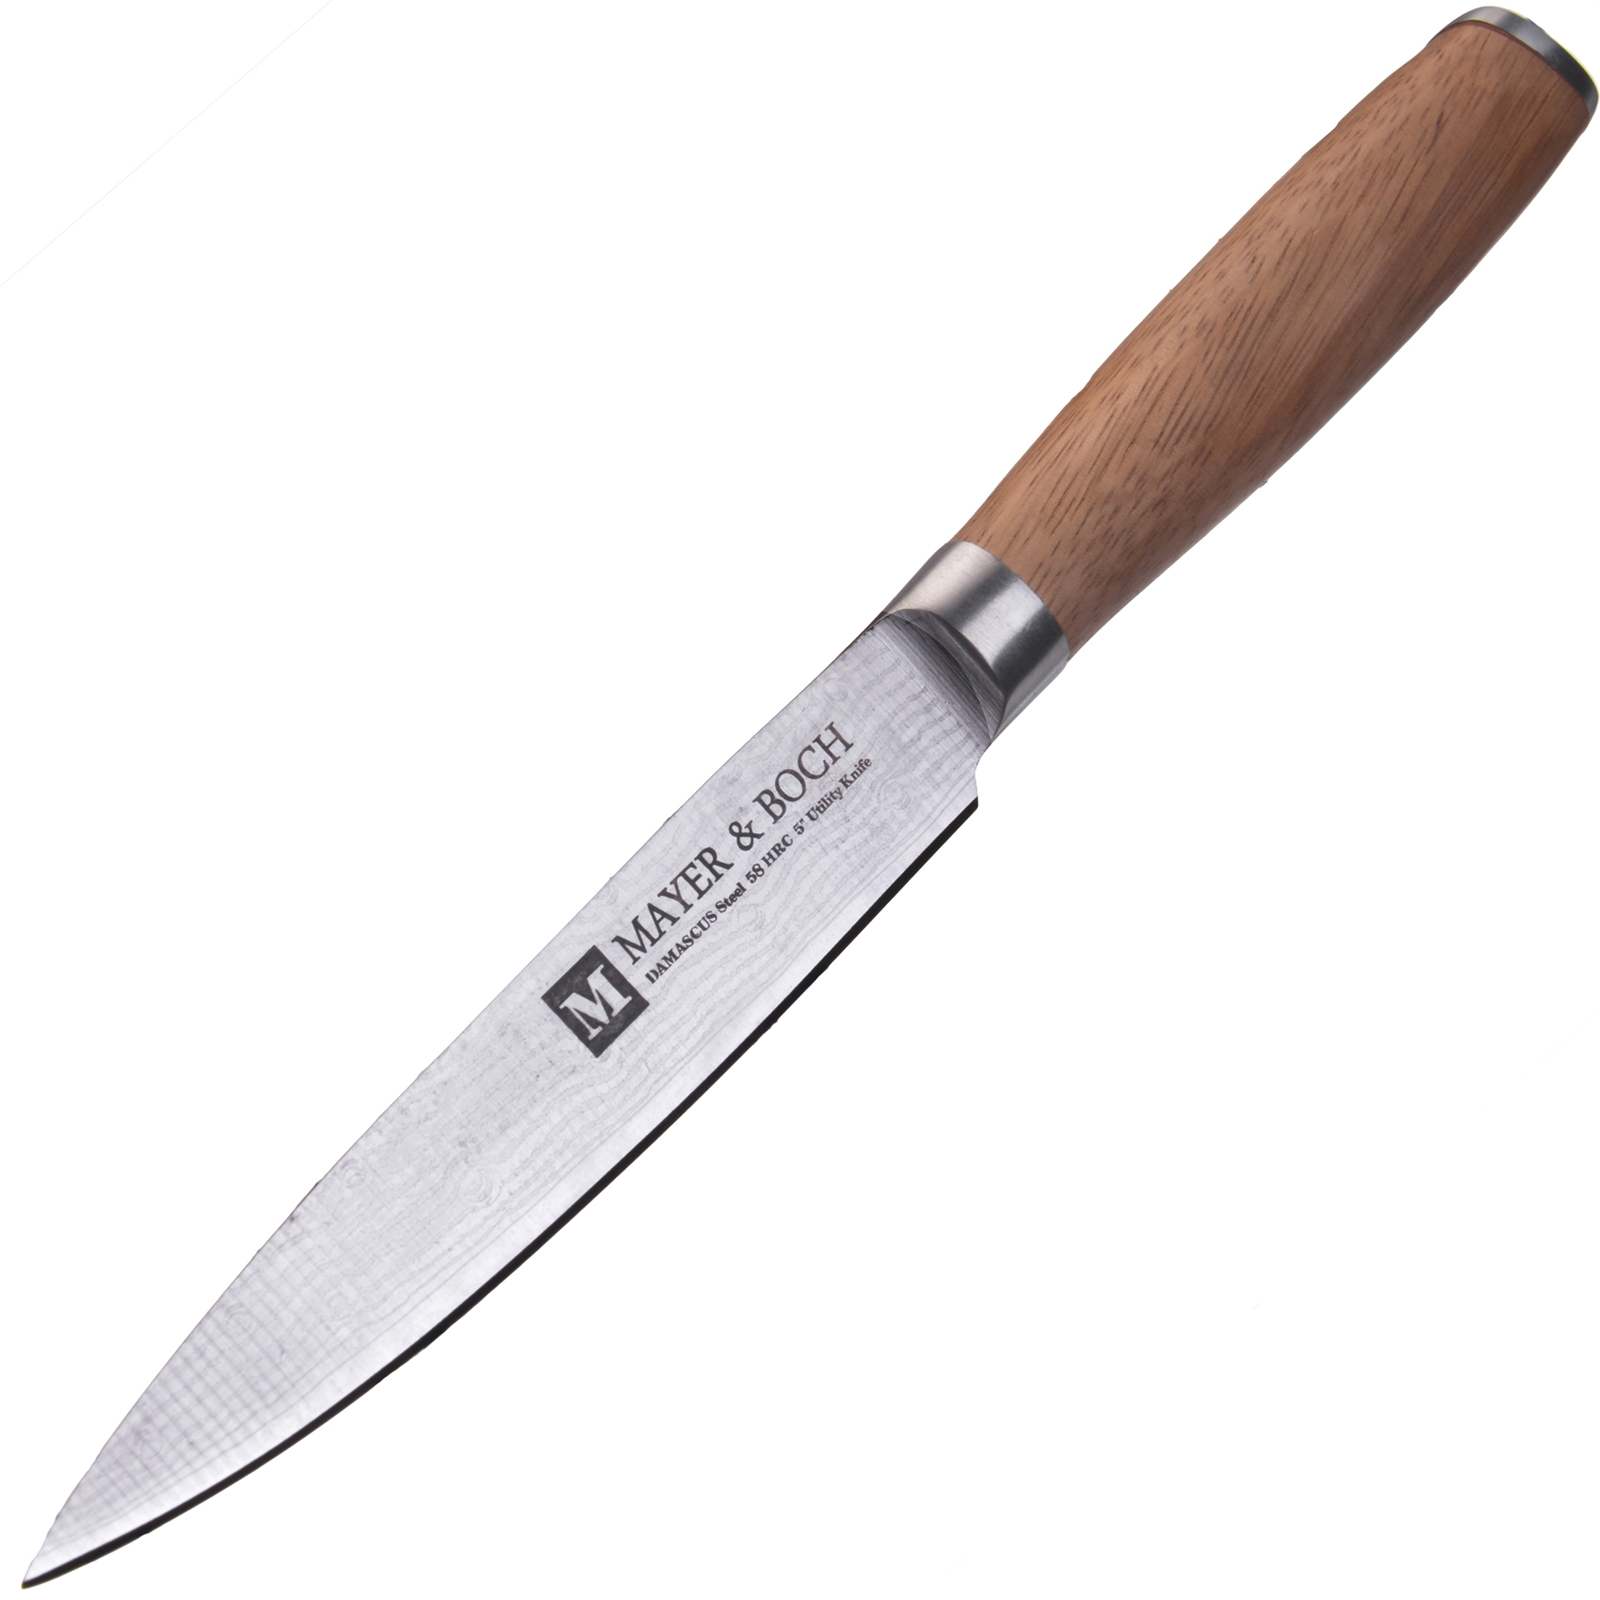 фото Нож разделочный Mayer & Boch Zenon, цвет: коричневый, серебристый, длина лезвия 12,7 см